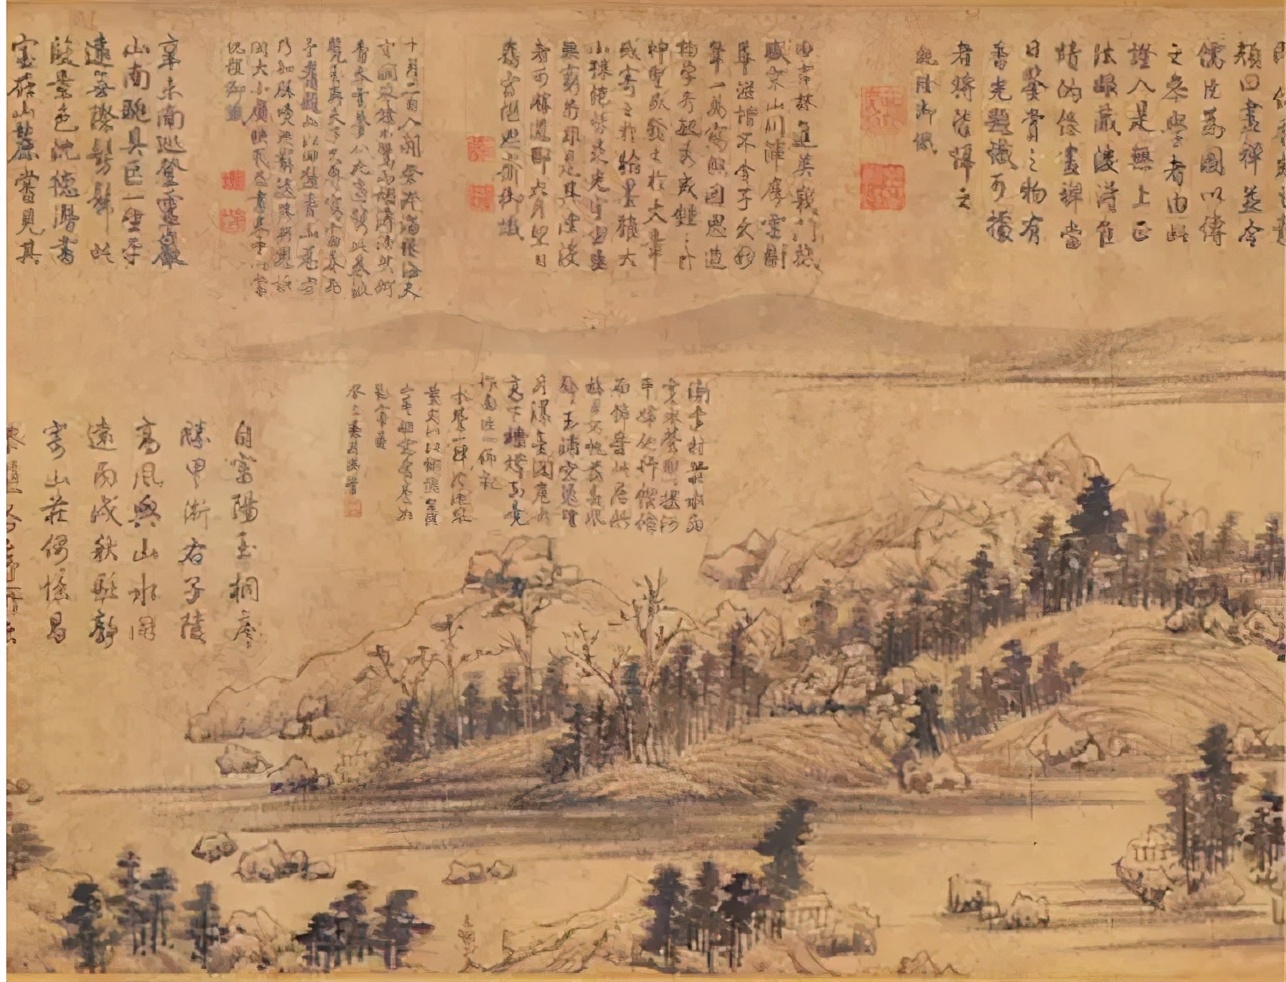 传世名画富春山居图流转世间600年